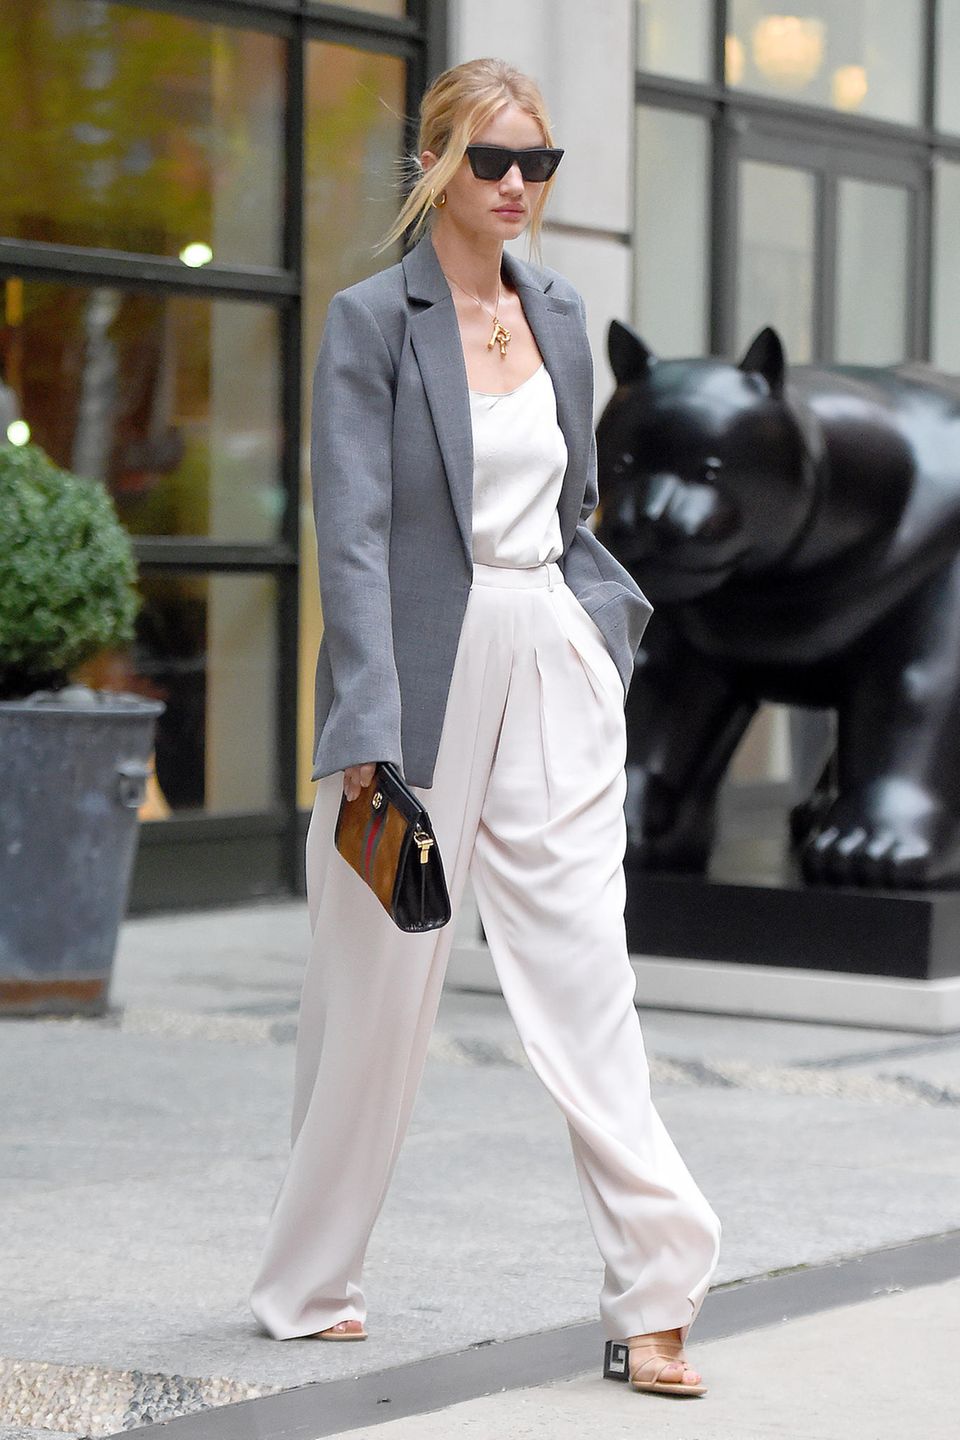 Was aussieht, wie ein Bild aus einer Fashion-Kampagne ist nur Rosie Huntington-Whiteley beim Verlassen ihres Hotels in New York. In einer weißen Marlene-Hose mit passendem Top, einem grauen Oversized-Blazer und mit cooler Sonnenbrille von Celine hat das Model ihren großen Auftritt. 